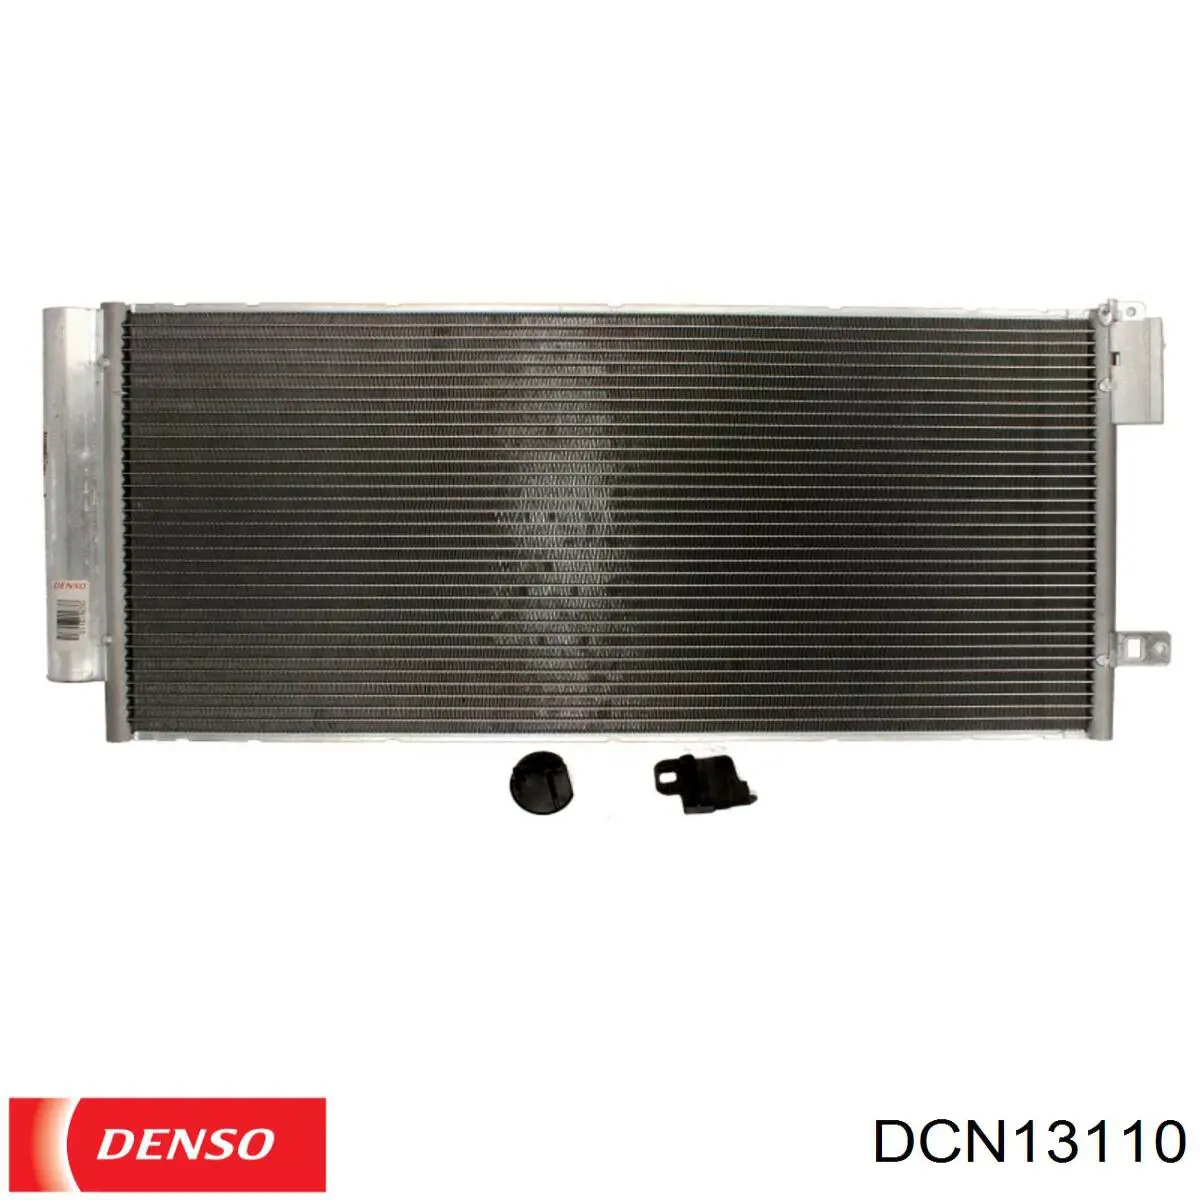 DCN13110 Denso condensador aire acondicionado